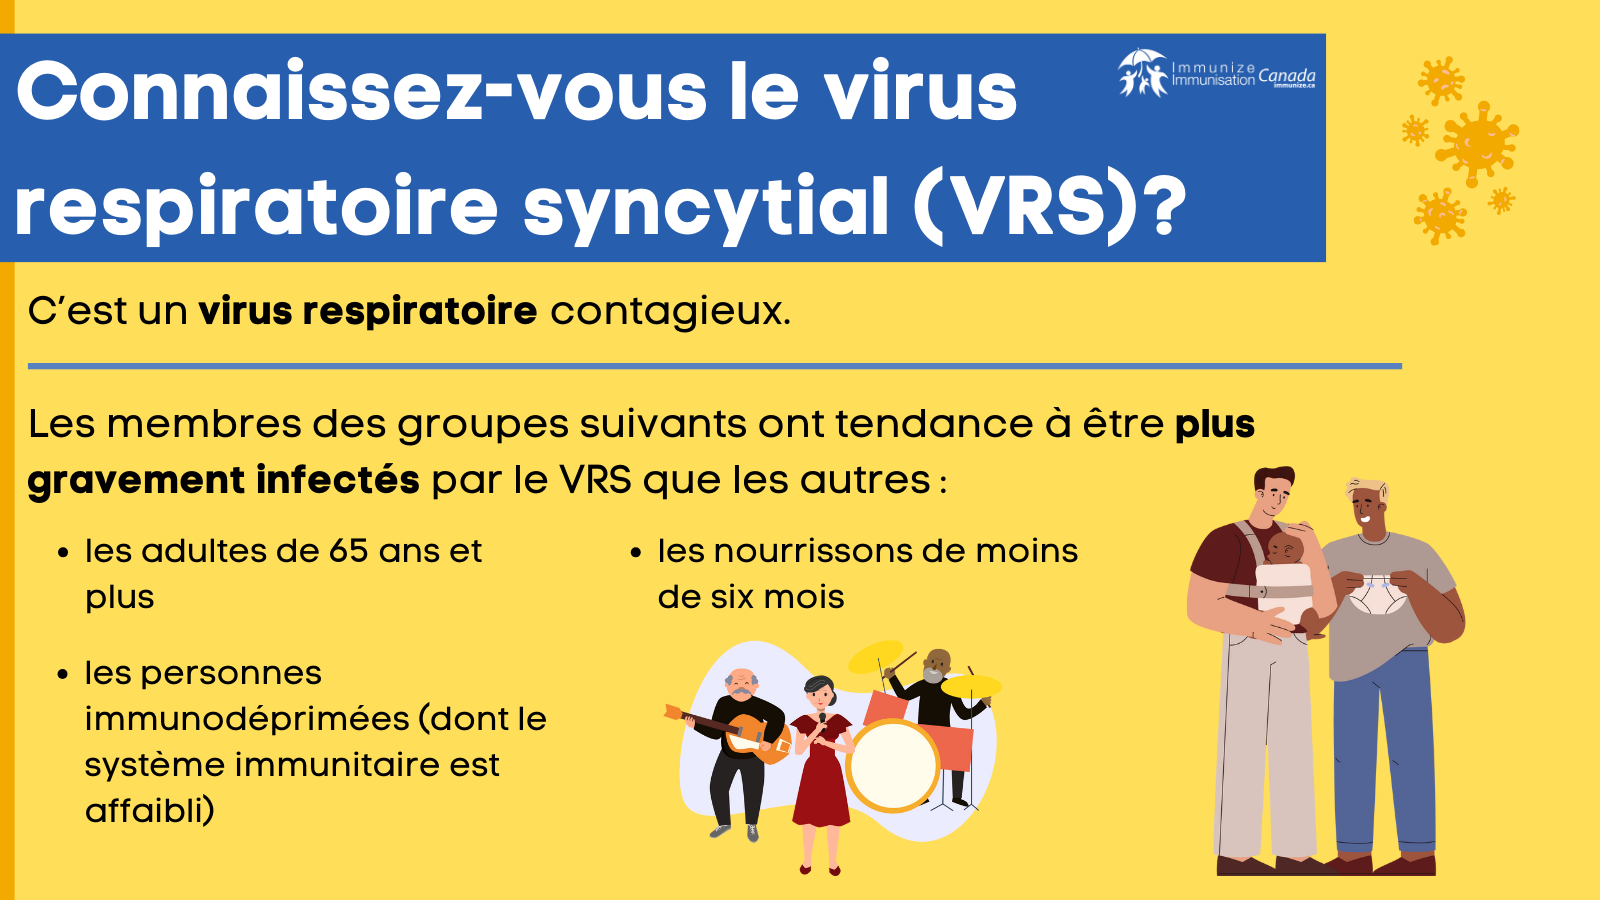 Connaissez-vous le virus respiratoire syncytial (VRS)? - image 3 pour Twitter